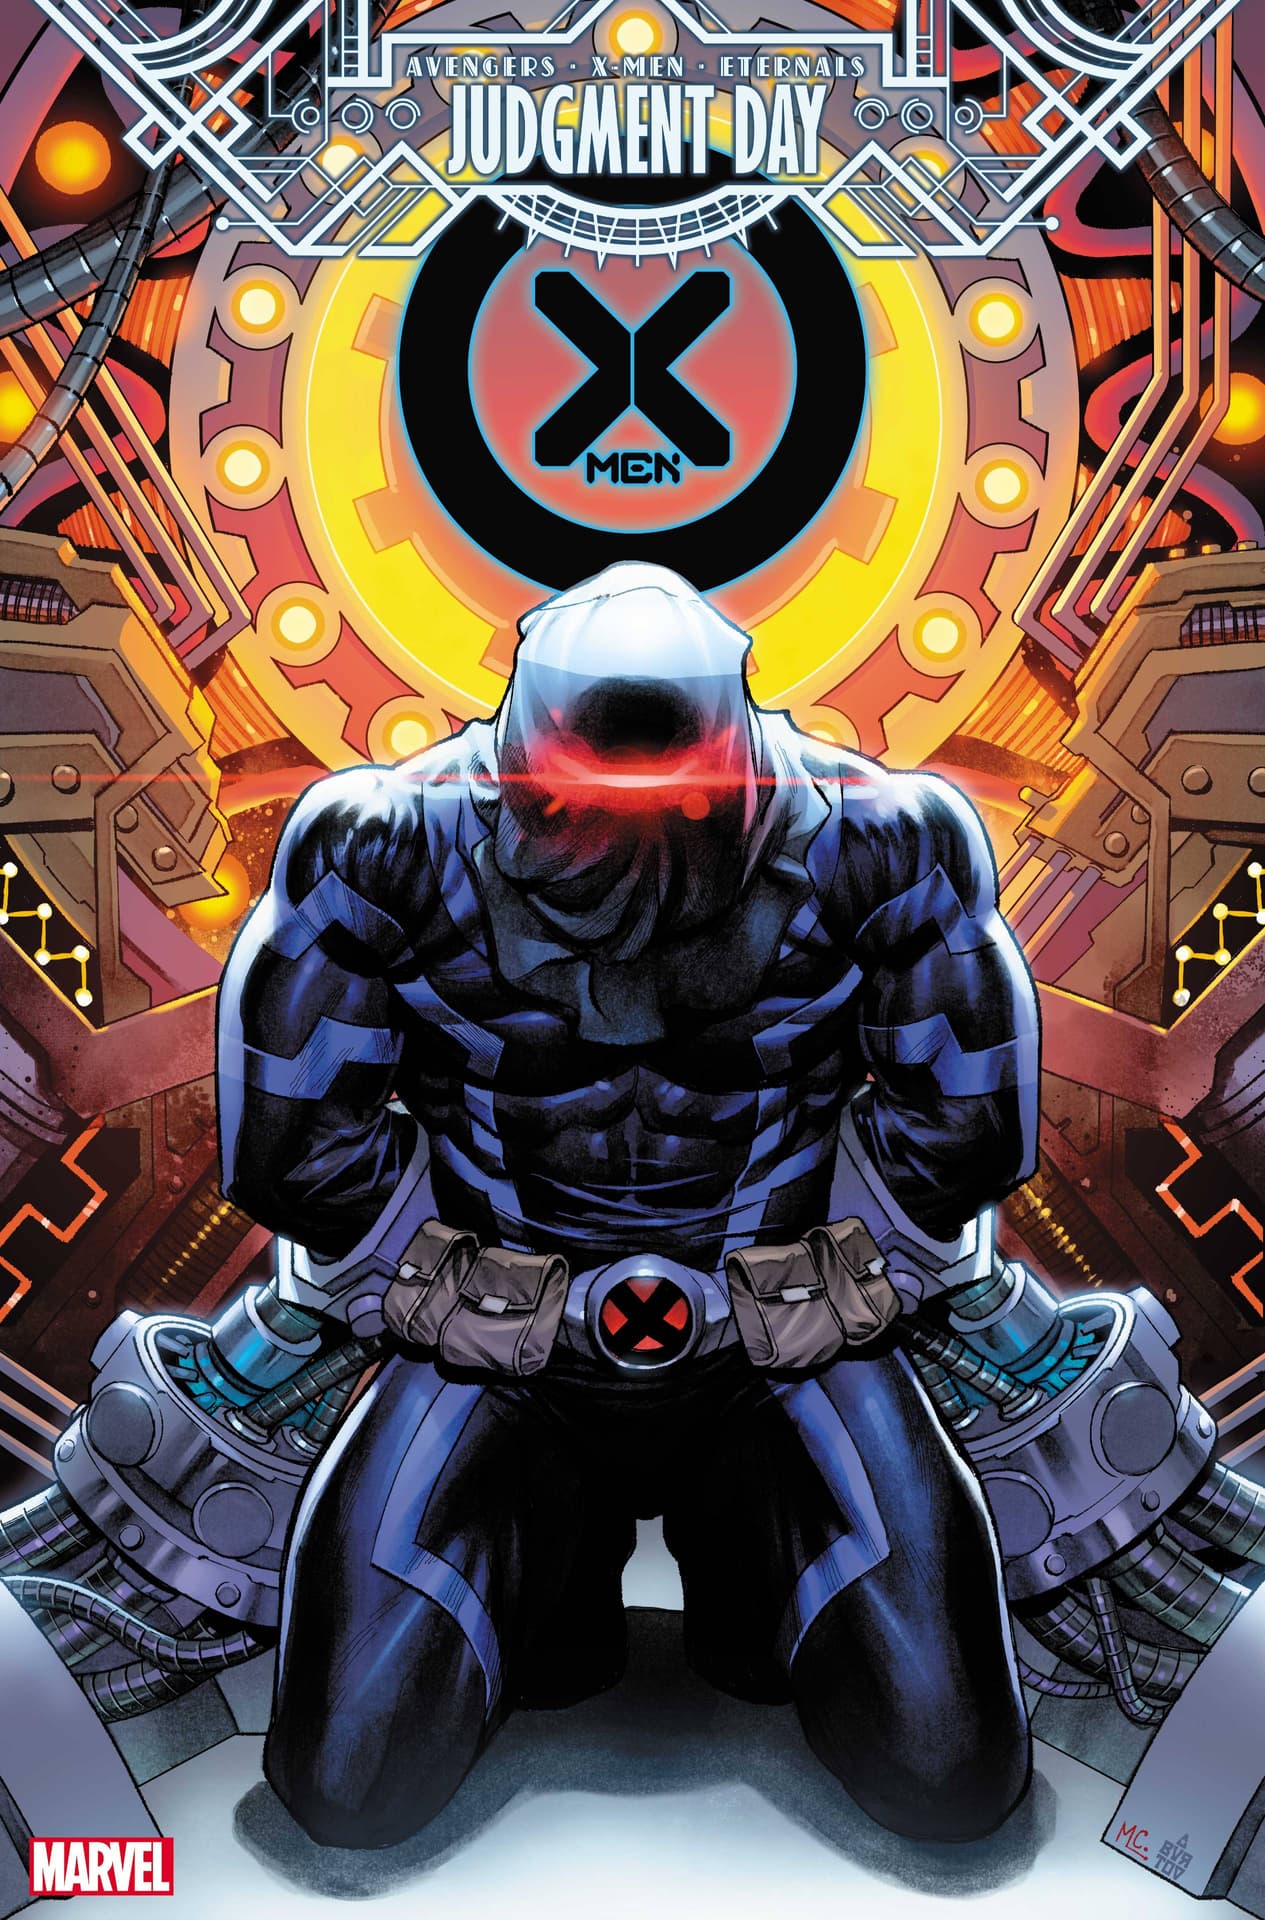 X-MEN #14 cover by Martin Coccolo